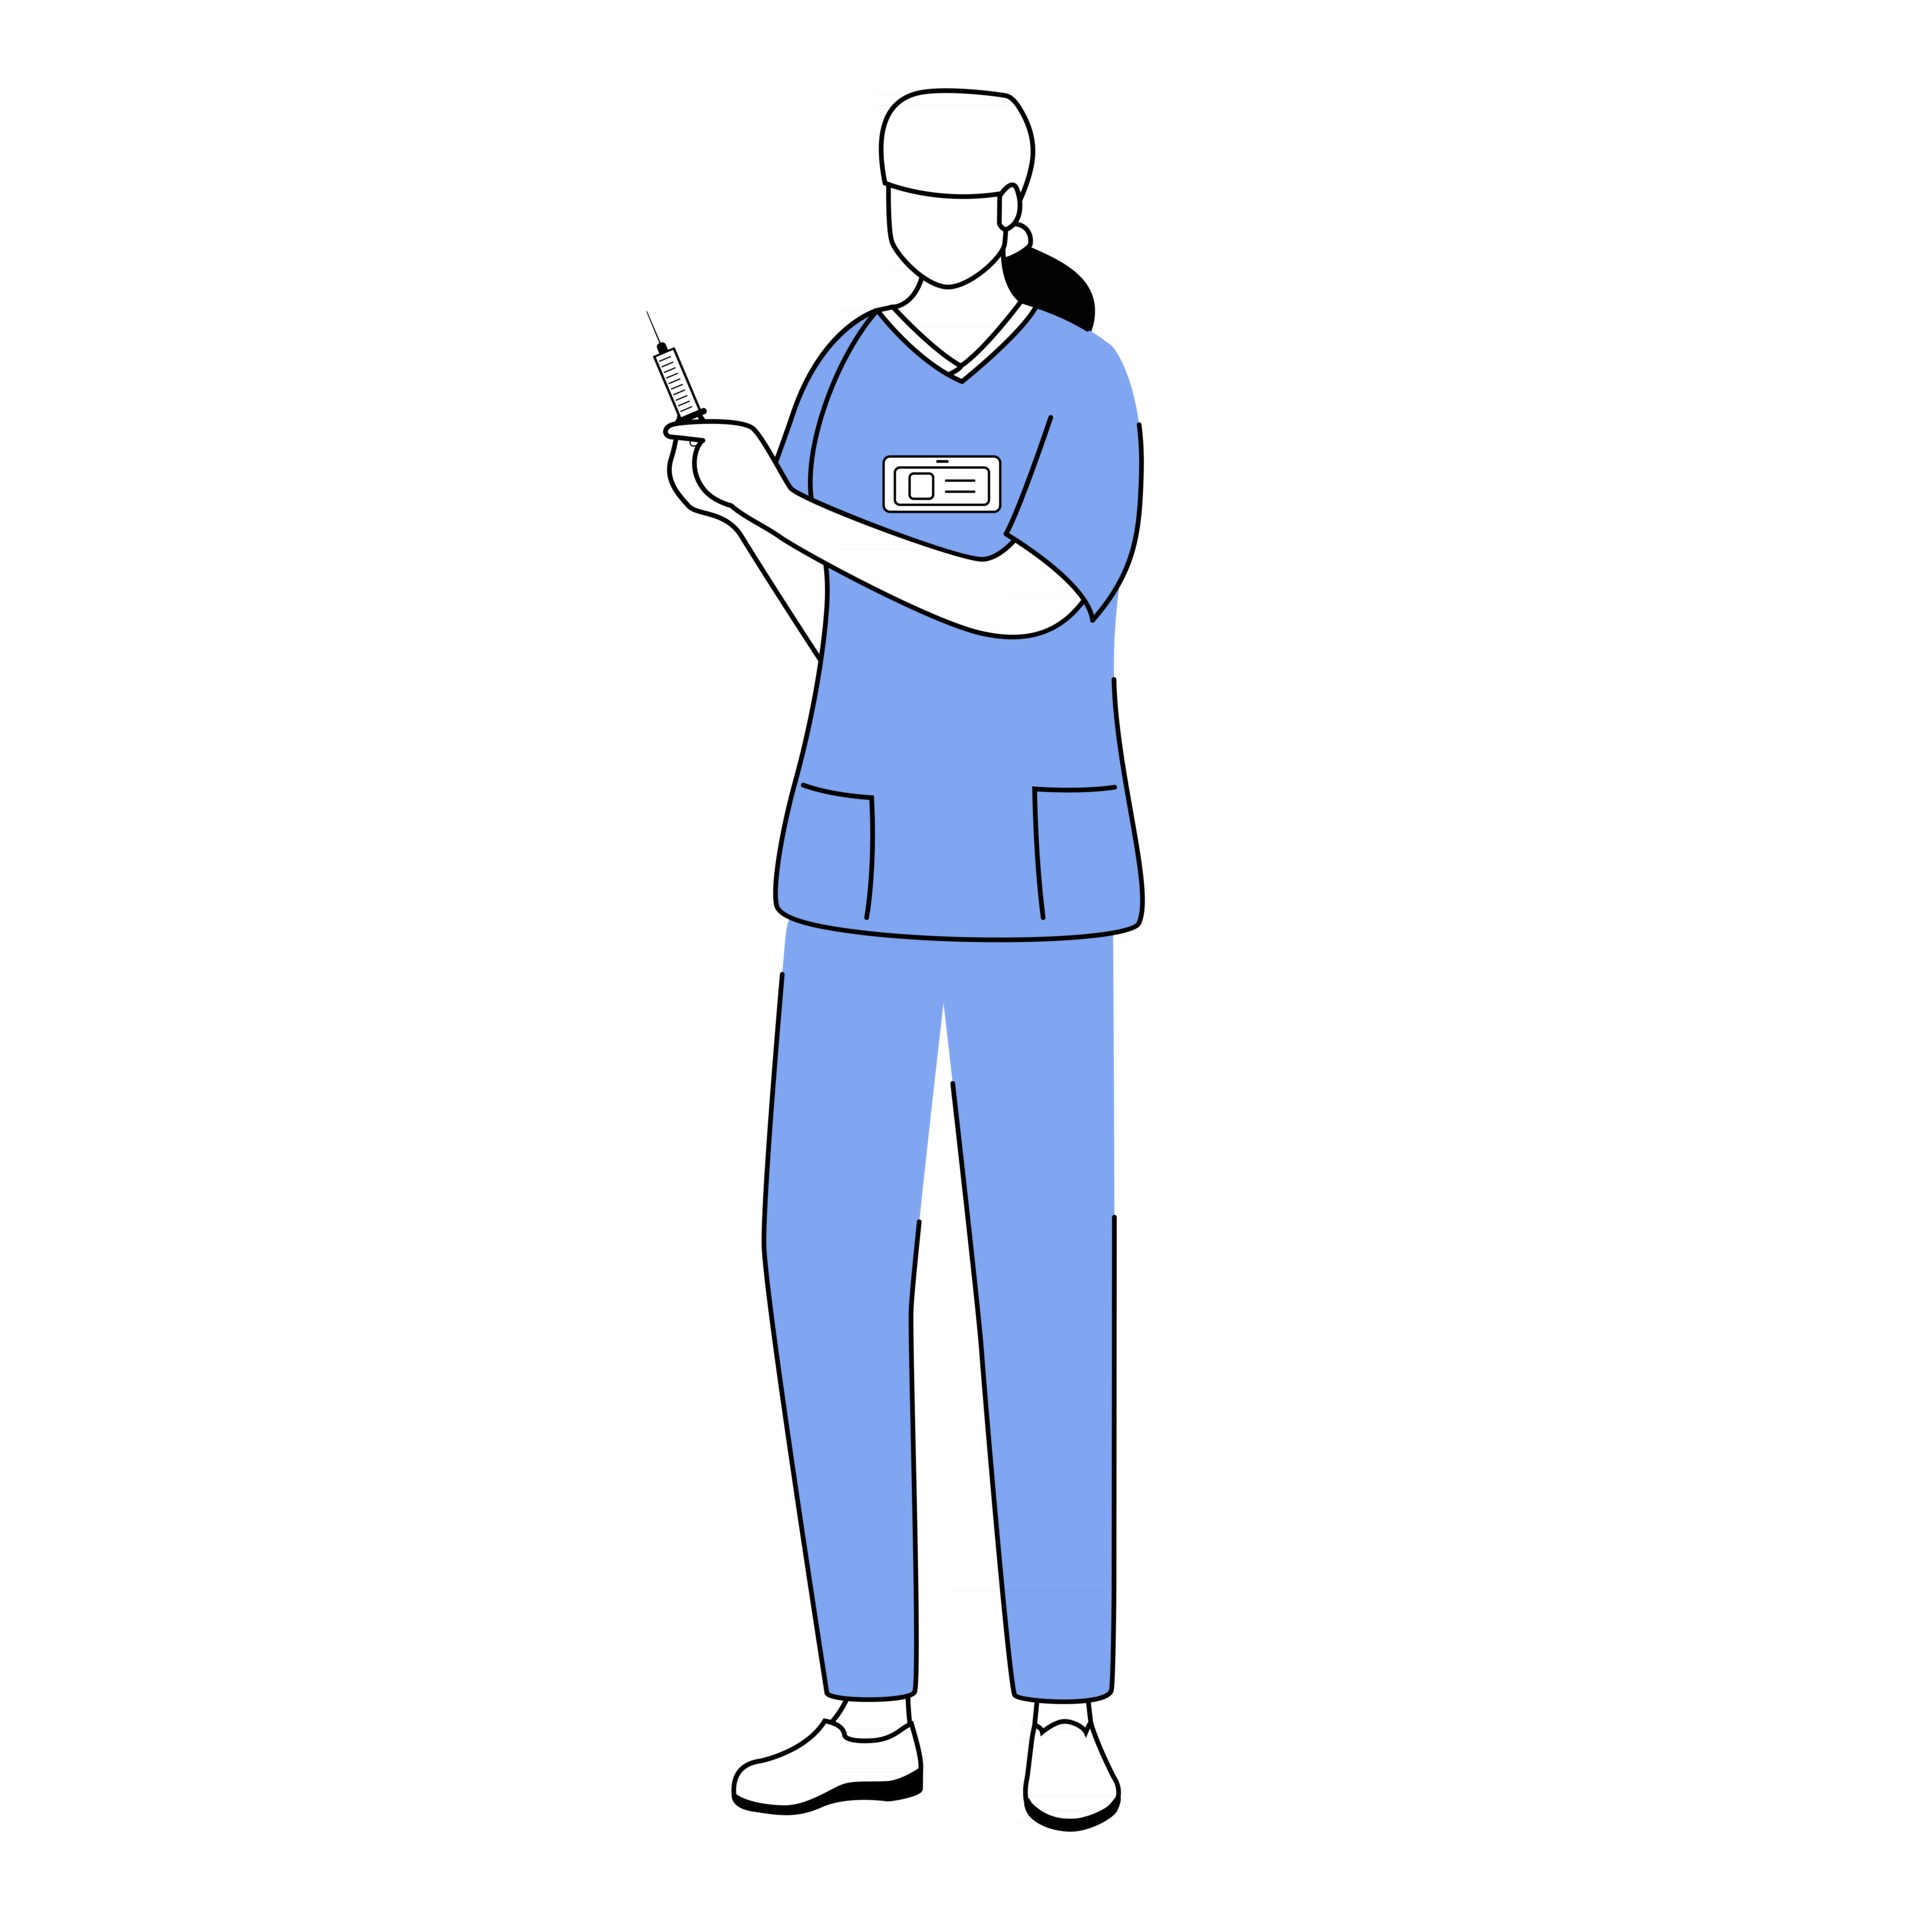 Personagem De Desenho Animado De Uma Médica Médica Ilustração do Vetor -  Ilustração de farmacêutico, enfermeira: 170859603